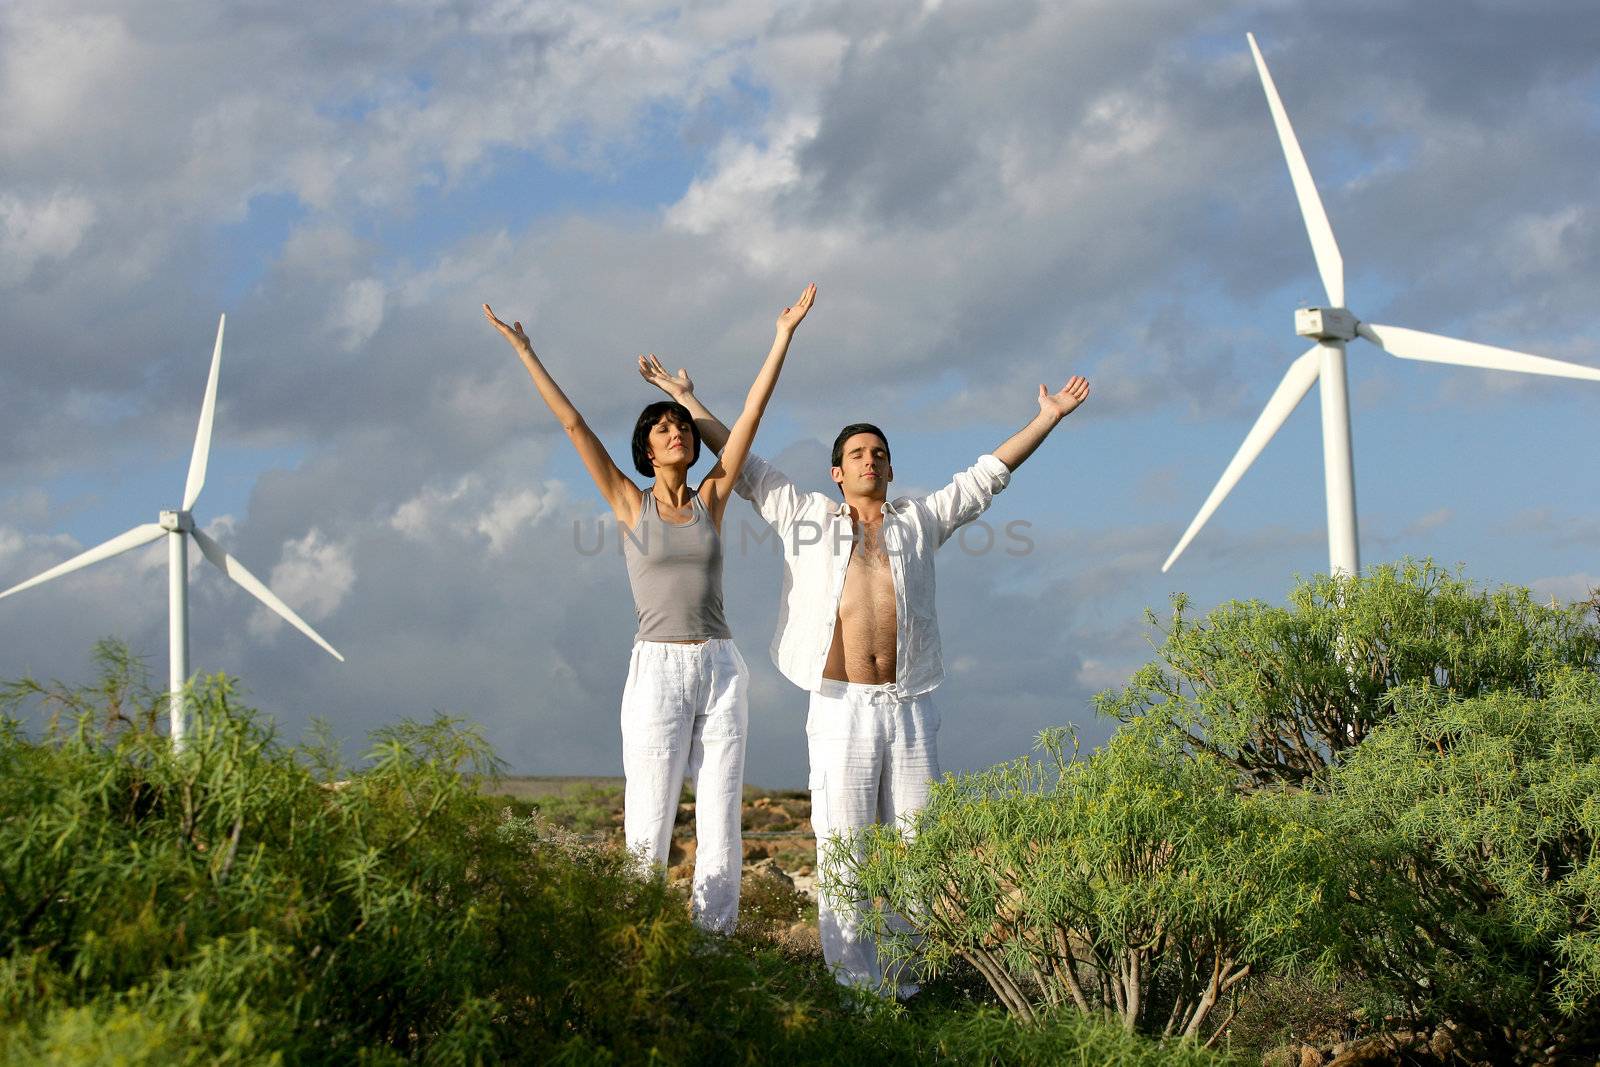 Zen couple on a wind farm